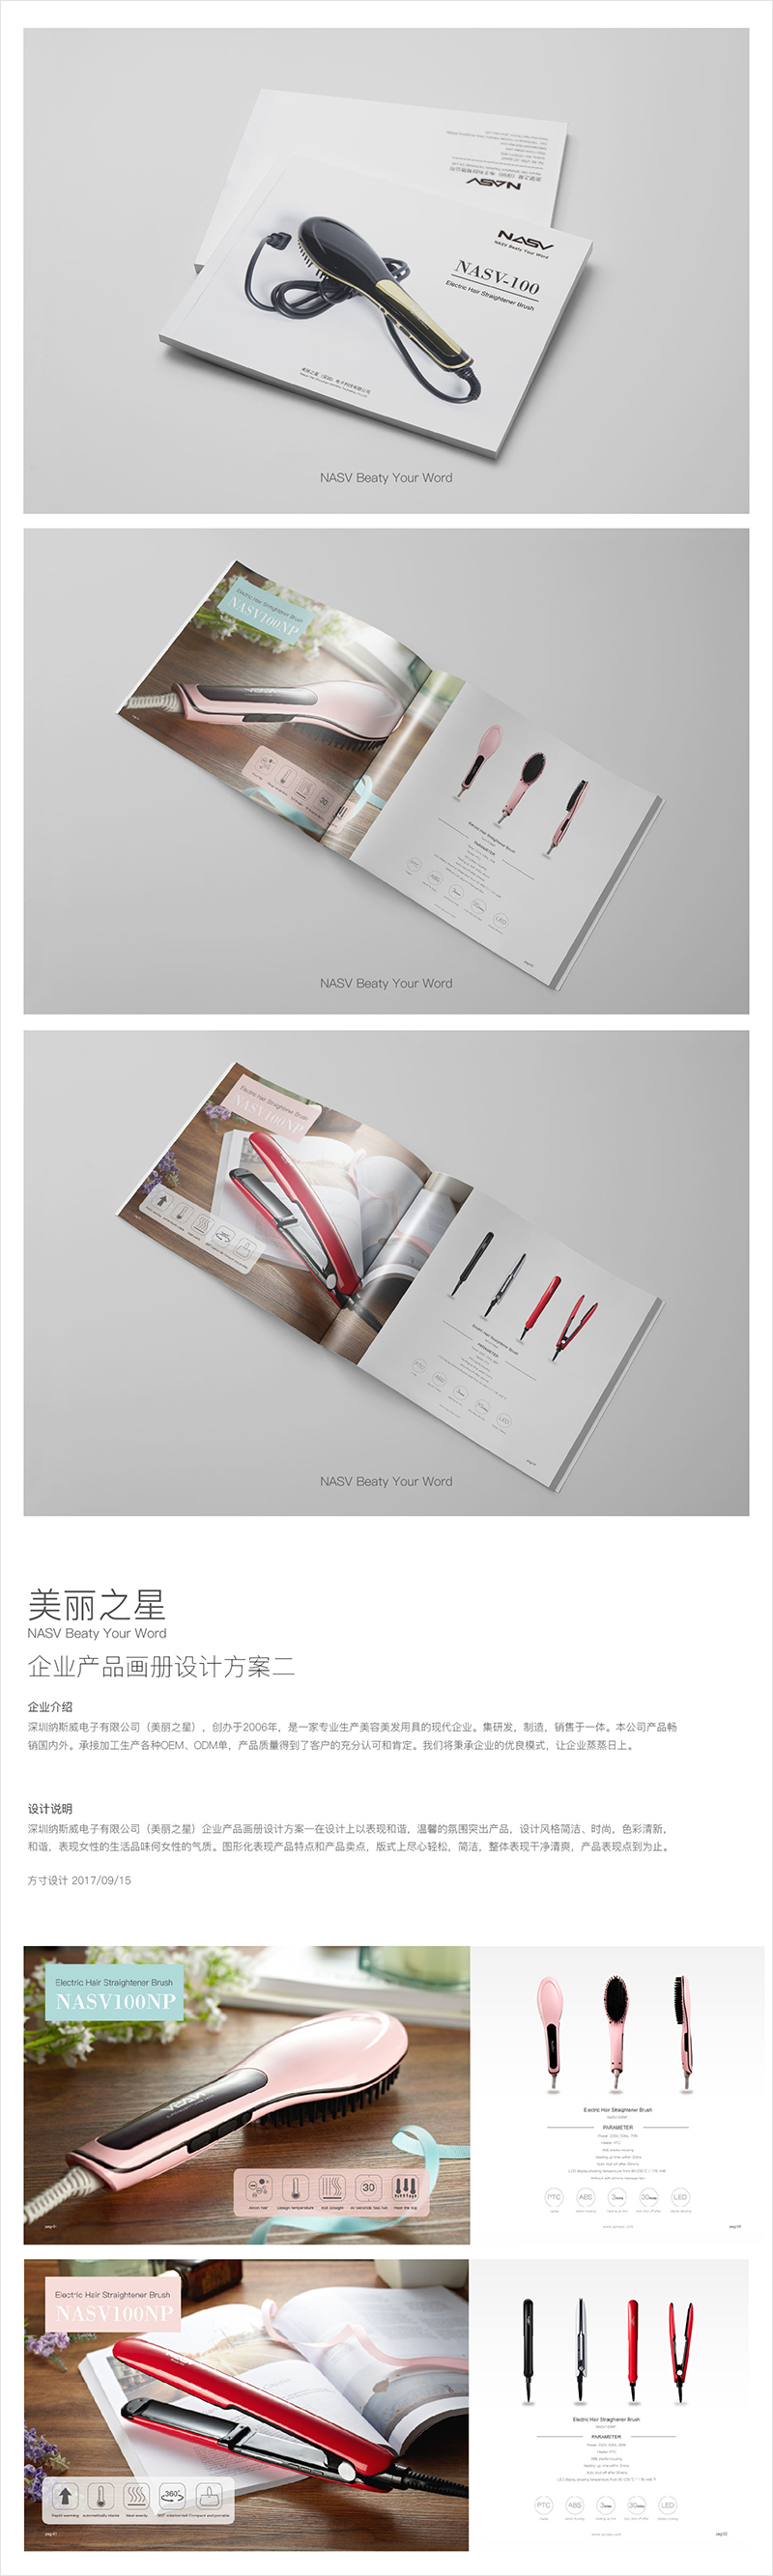 深圳宣传册设计